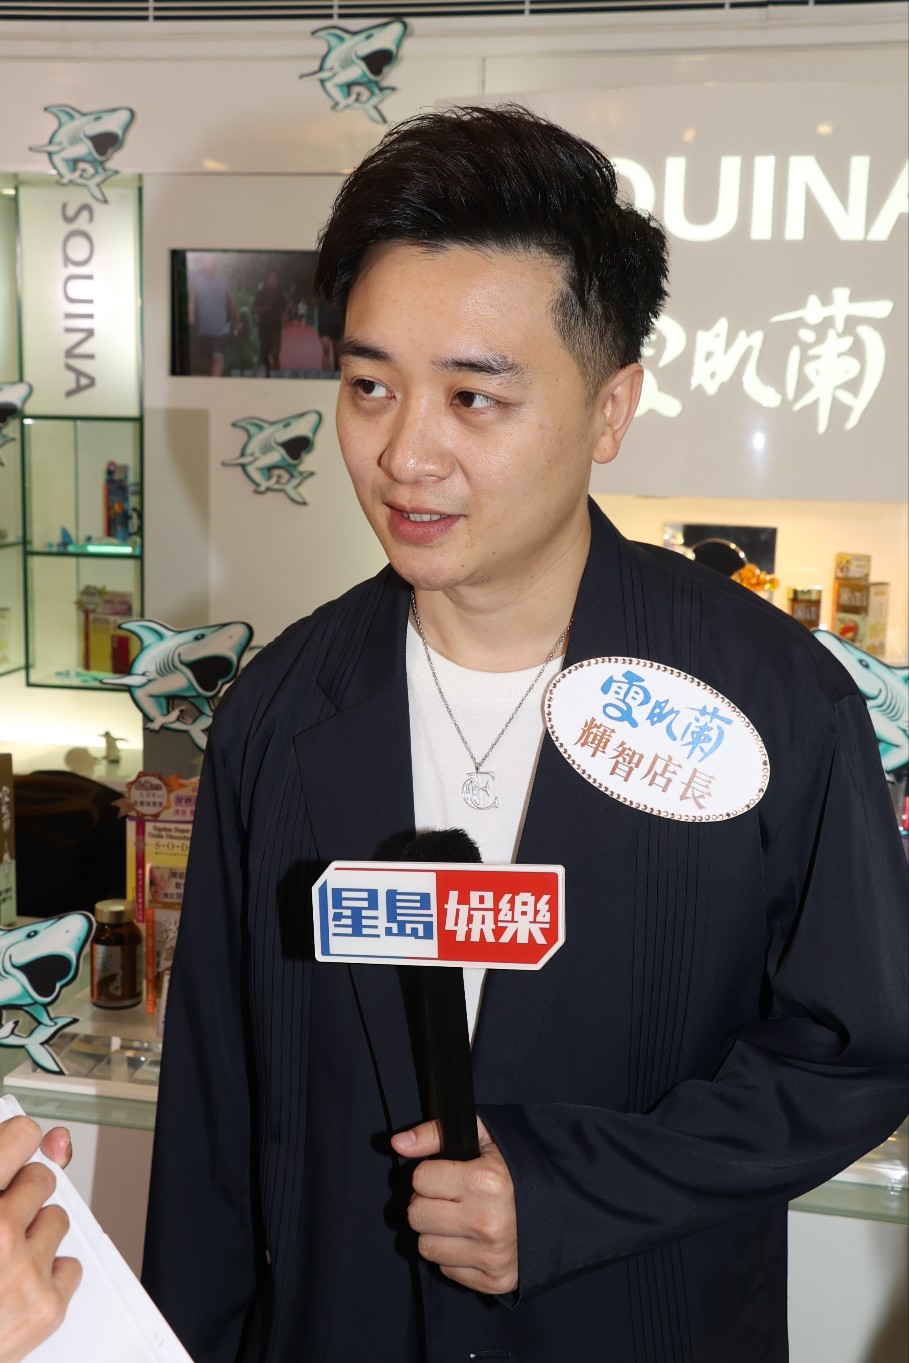 譚輝智表示在首映禮上有與霆鋒握手和傾了一、兩句。